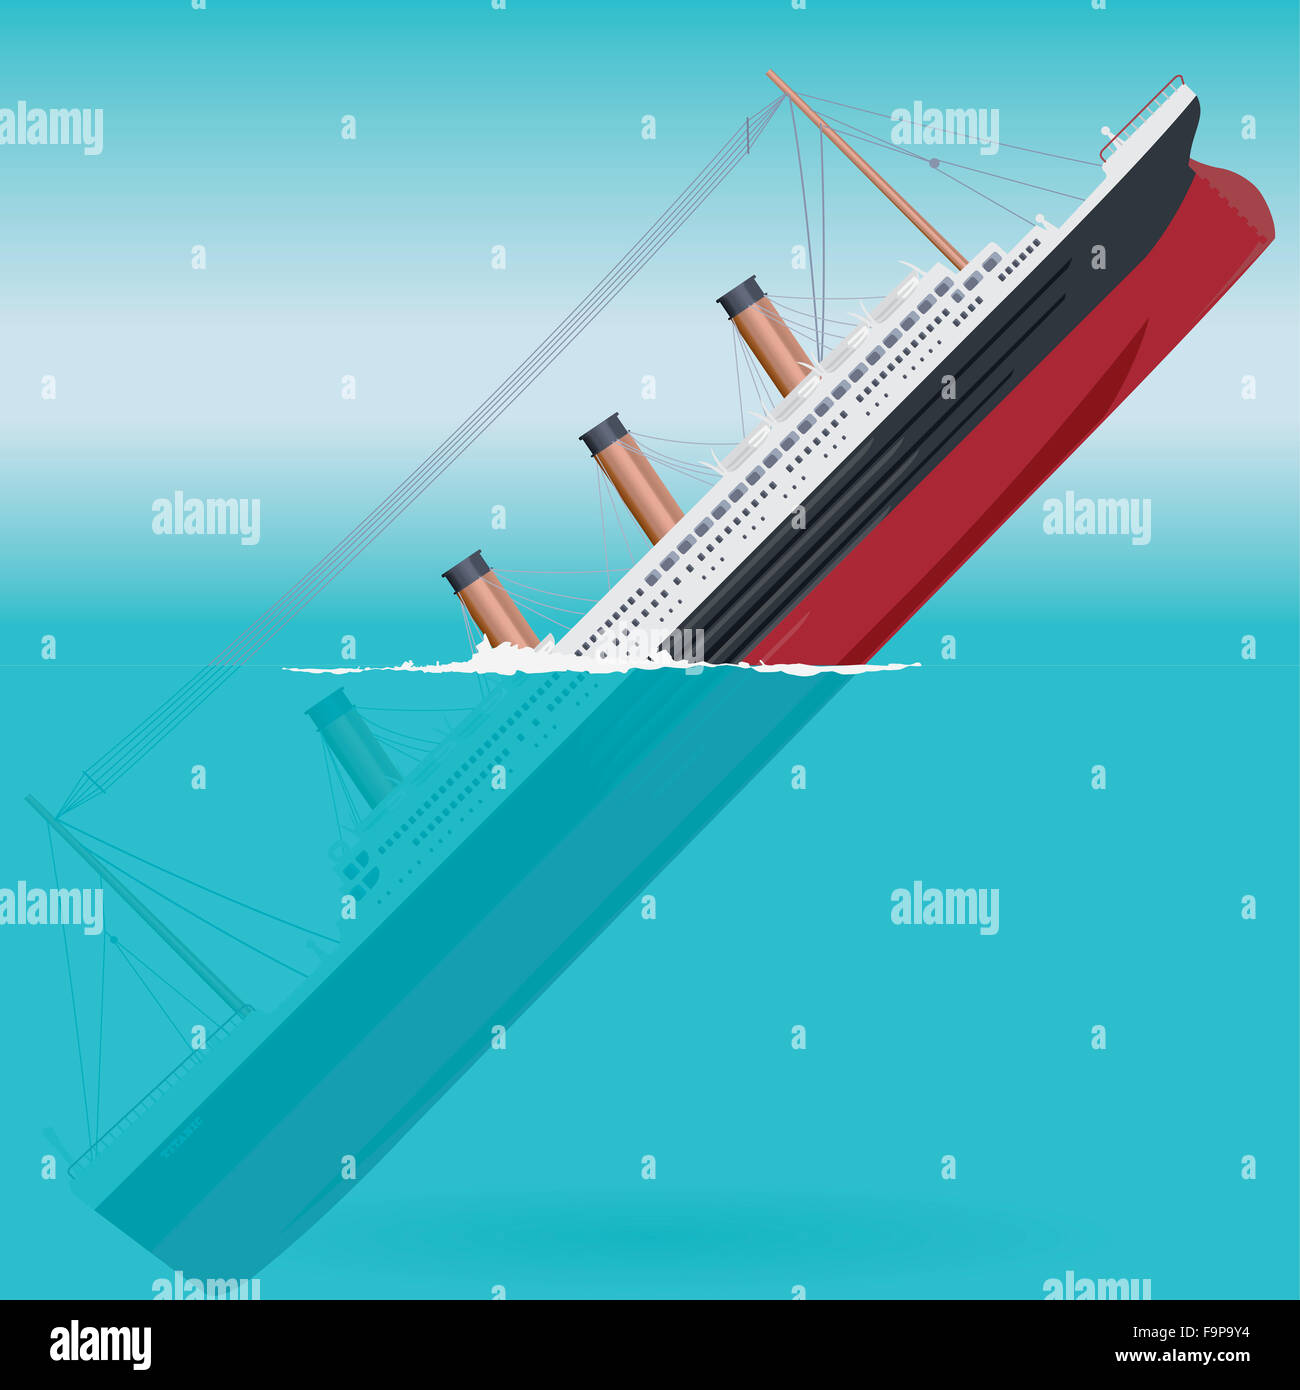 Naufrage du Titanic - Grand navire bateau colossal légendaire symbole monumental grand navire aplatir l'icône illustration vecteur principal isolé Banque D'Images